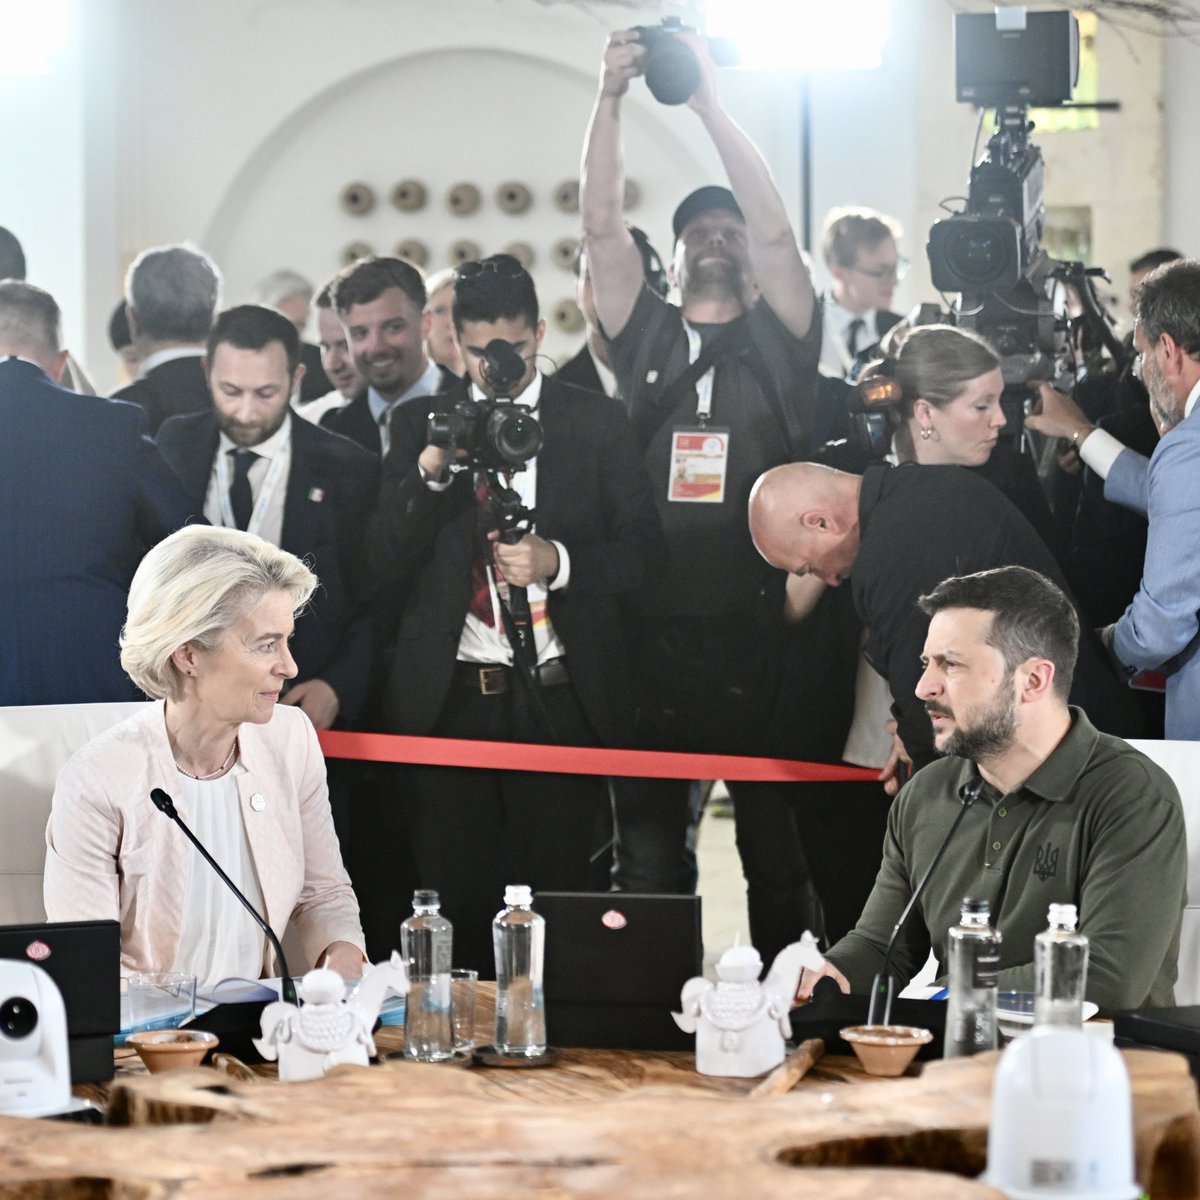 Ursula von der Leyen: Die G7 hat vereinbart, der Ukraine bis Ende des Jahres Kredite im Wert von rund 50 Milliarden Dollar zu gewähren. Wir werden die unerwarteten Gewinne aus Russlands Staatsvermögen nutzen, um diese zurückzuzahlen. Dies baut auf den Maßnahmen der EU auf, bei denen wir diese unerwarteten Gewinne bereits für die Verteidigung und den Wiederaufbau der Ukraine einsetzen.